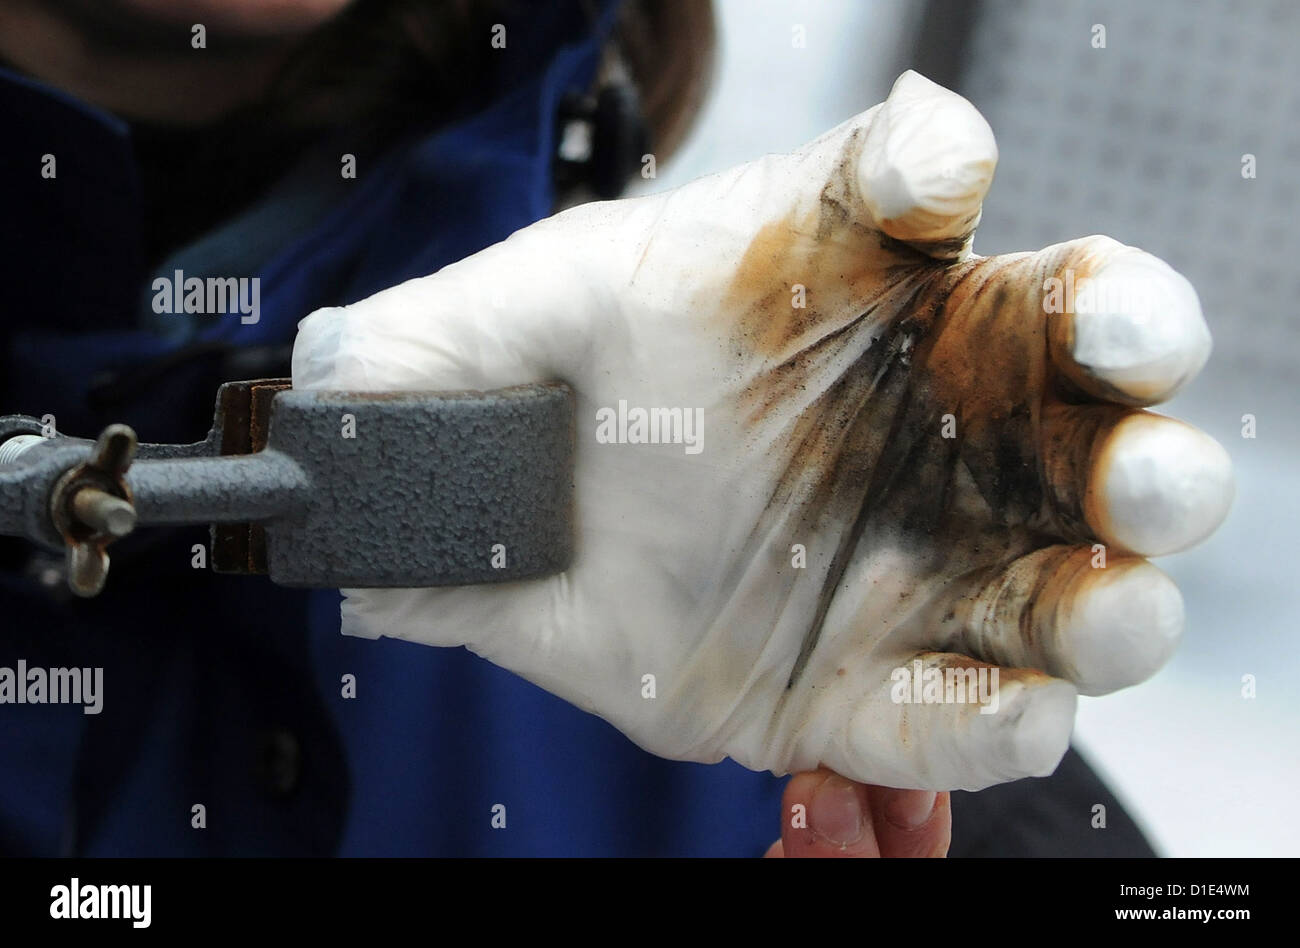 Heidrun Fink, empleado de la pirotecnia, departamento del Instituto Federal de Investigación y prueba de materiales (BAM) muestra un modelo de mano después de una explosión de un artefacto explosivo en Berlín, Alemania, el 14 de diciembre de 2012. Foto: Laurin Schmid Foto de stock